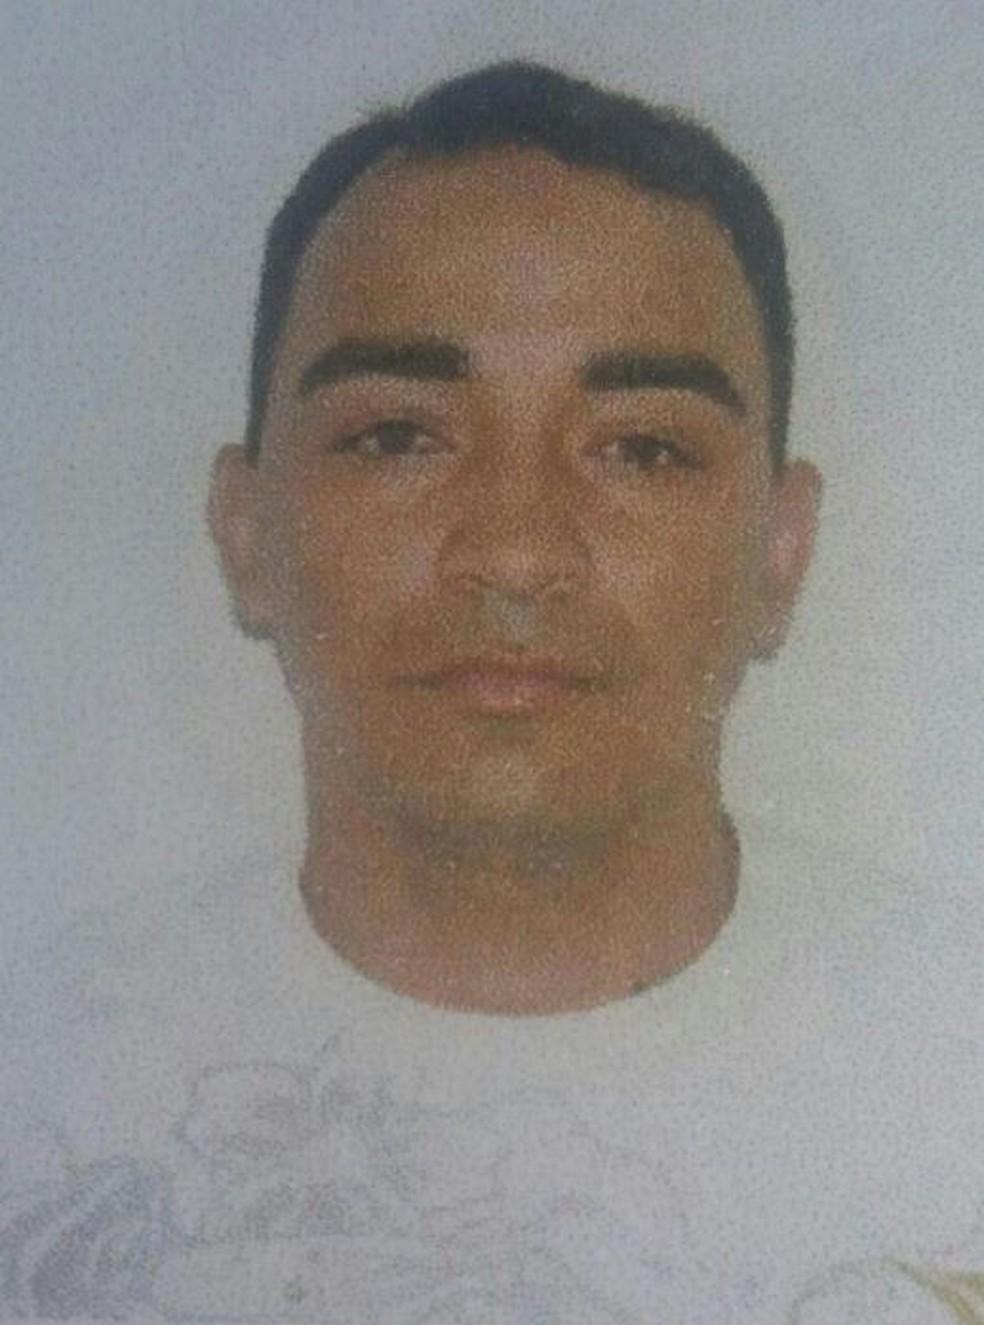  Edmilson Fernandes da Silva, de 38 anos, morreu no local (Foto: Arquivo pessoal)